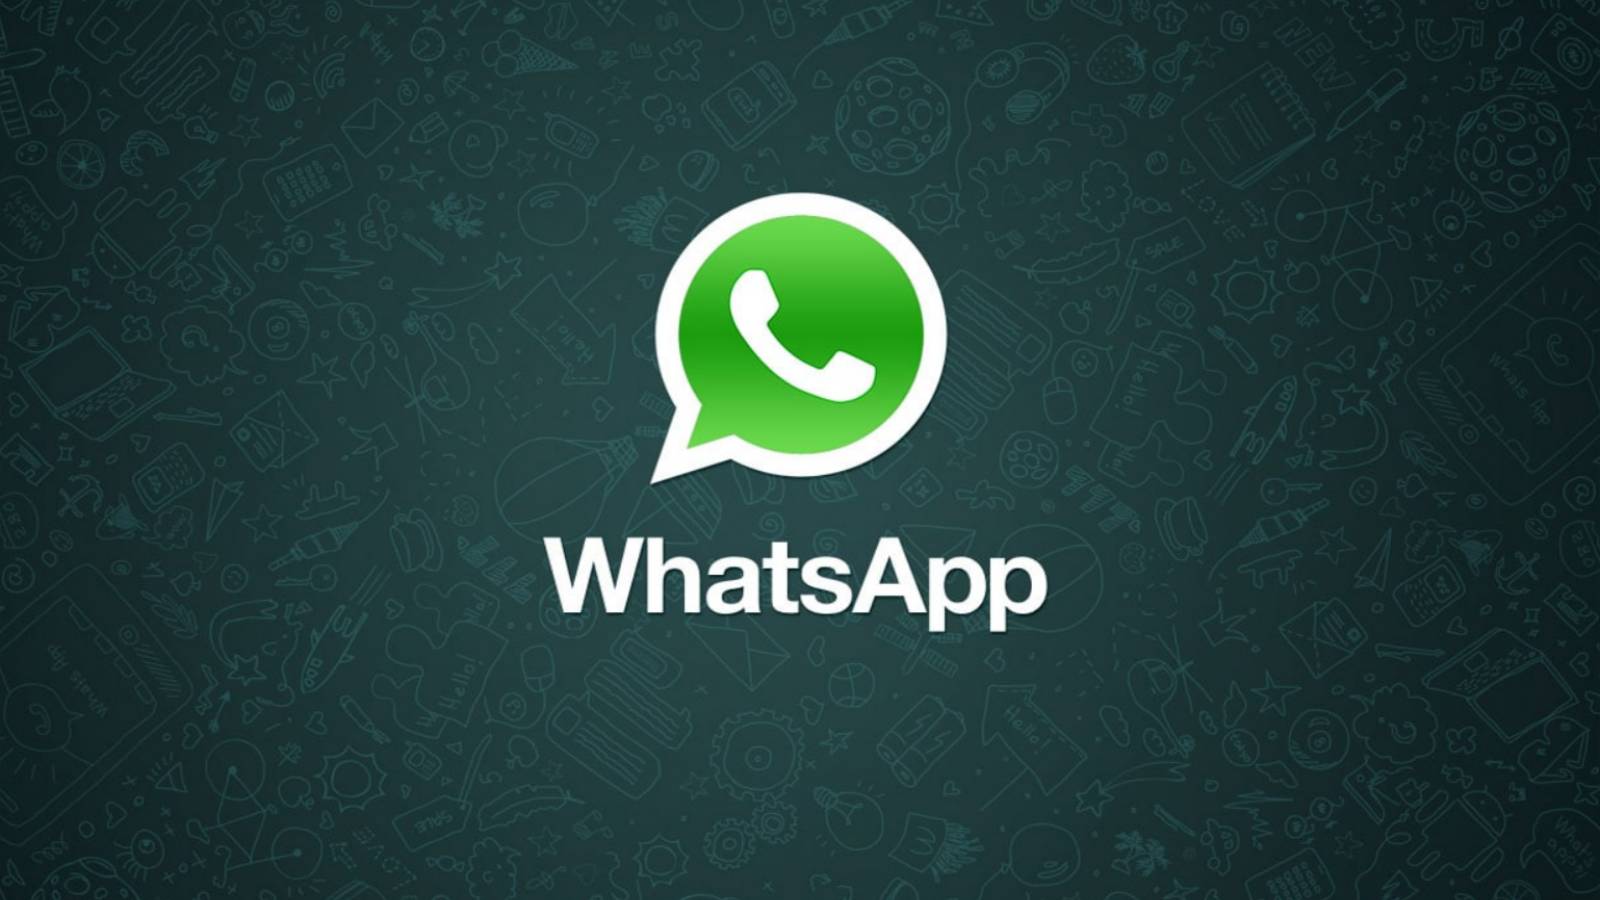 WhatsApp resource